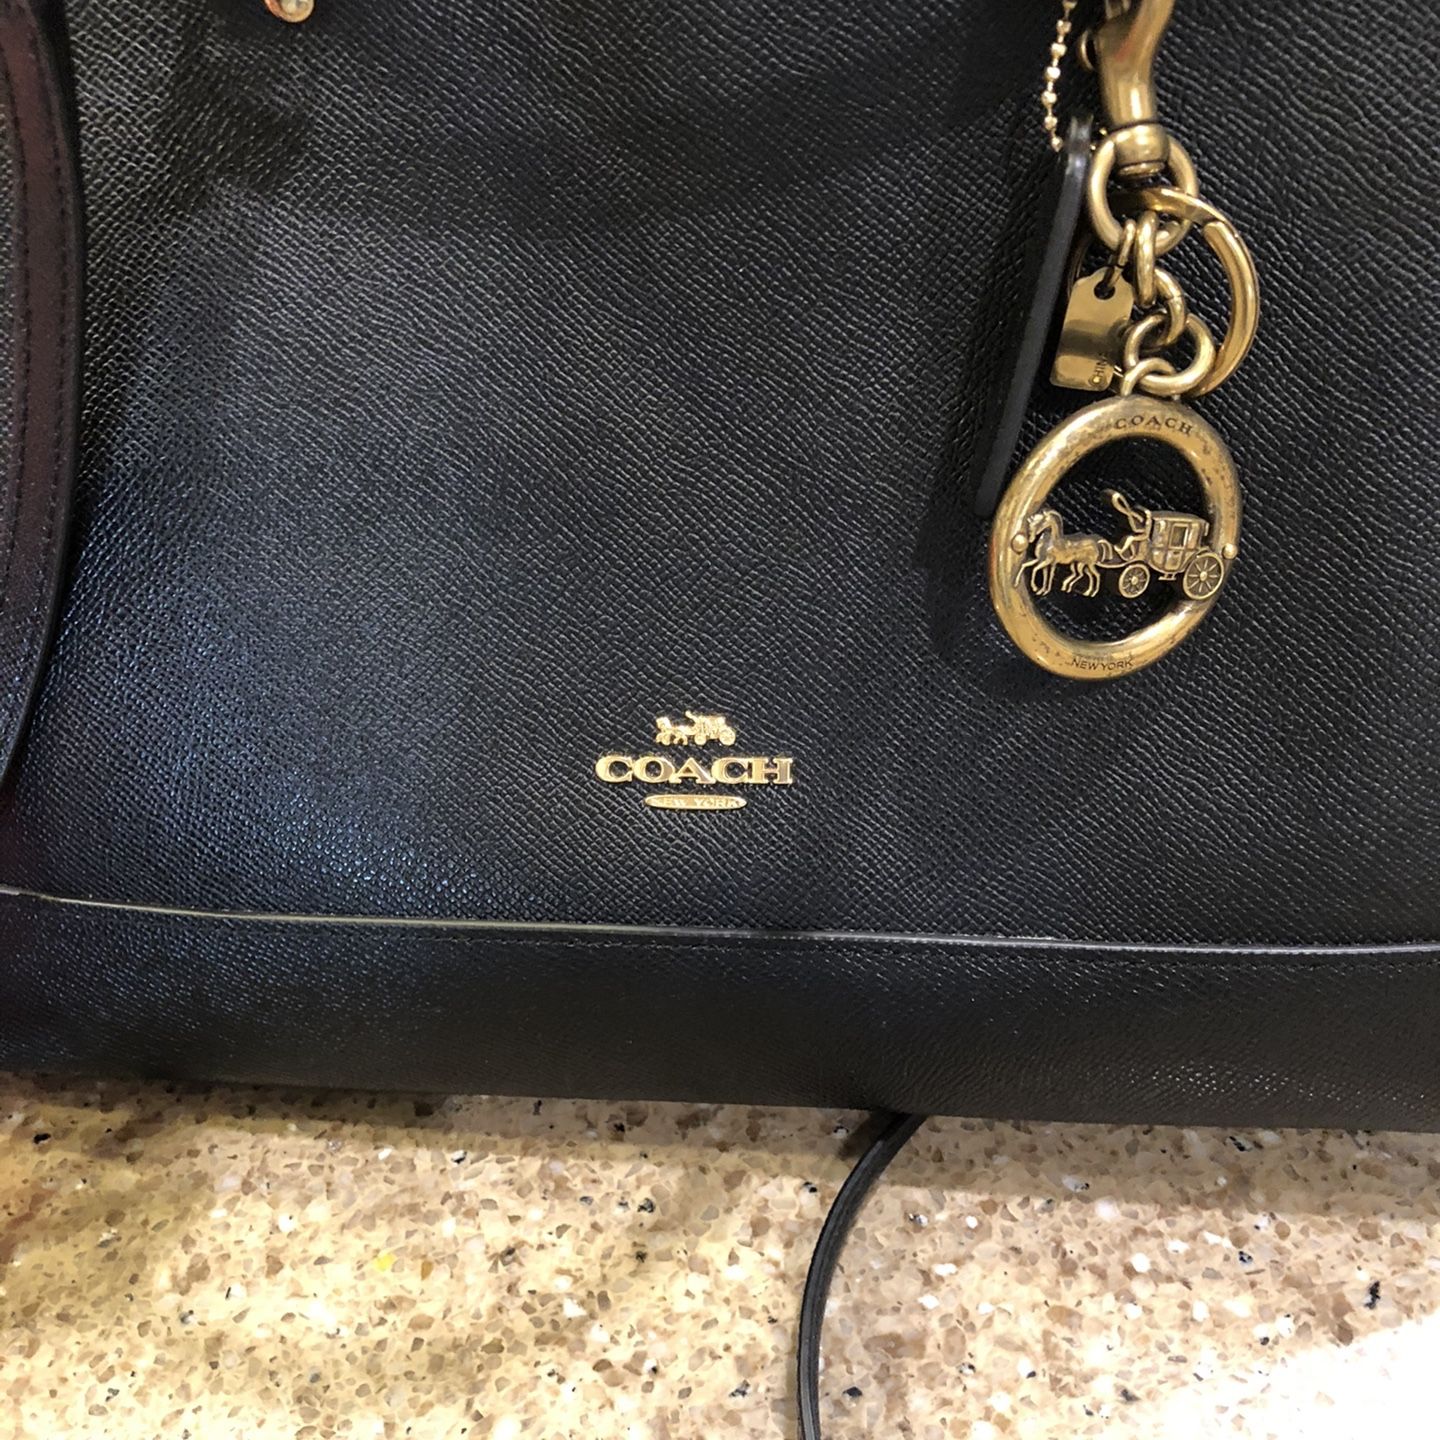 Large COACH bag KATY style